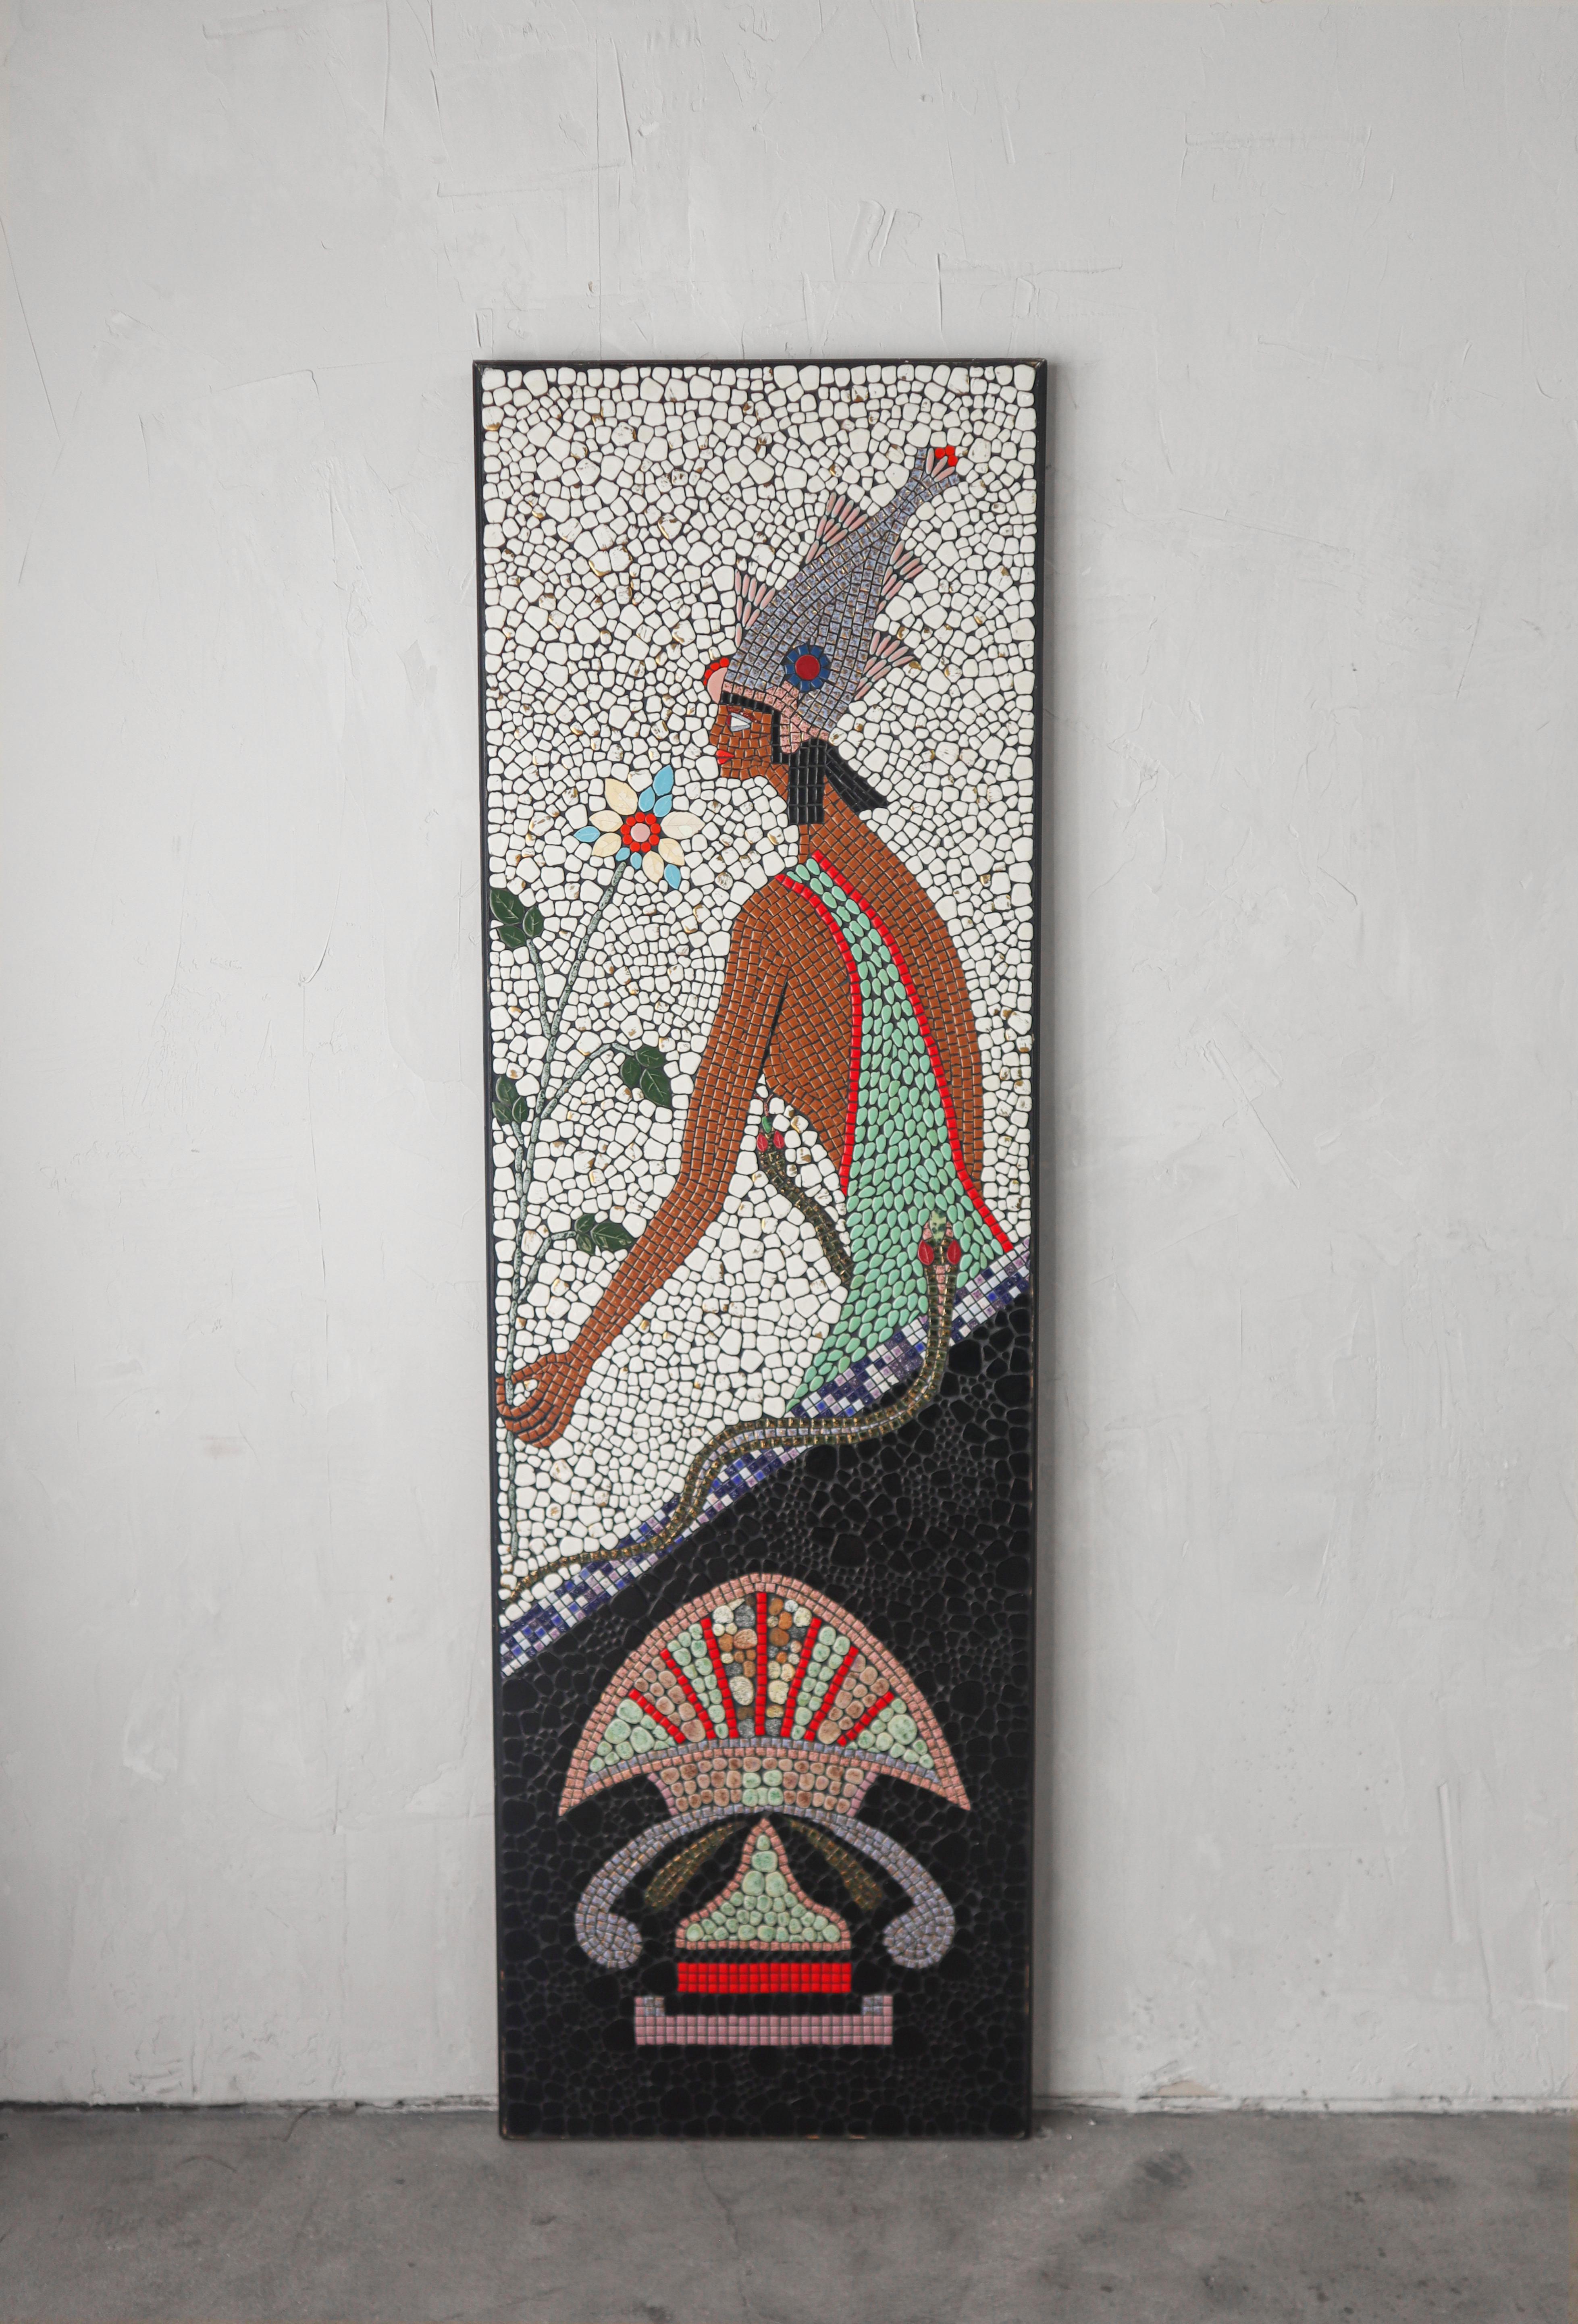 Einzigartiges Mosaik aus der Mitte des Jahrhunderts, das eine ägyptische Göttin darstellt, möglicherweise Hatmehyt, die ägyptische Göttin der Fische. 

Das Mosaik ist 6,5 Fuß hoch und besteht aus abgerundeten, kieselsteinähnlichen Steinen in den